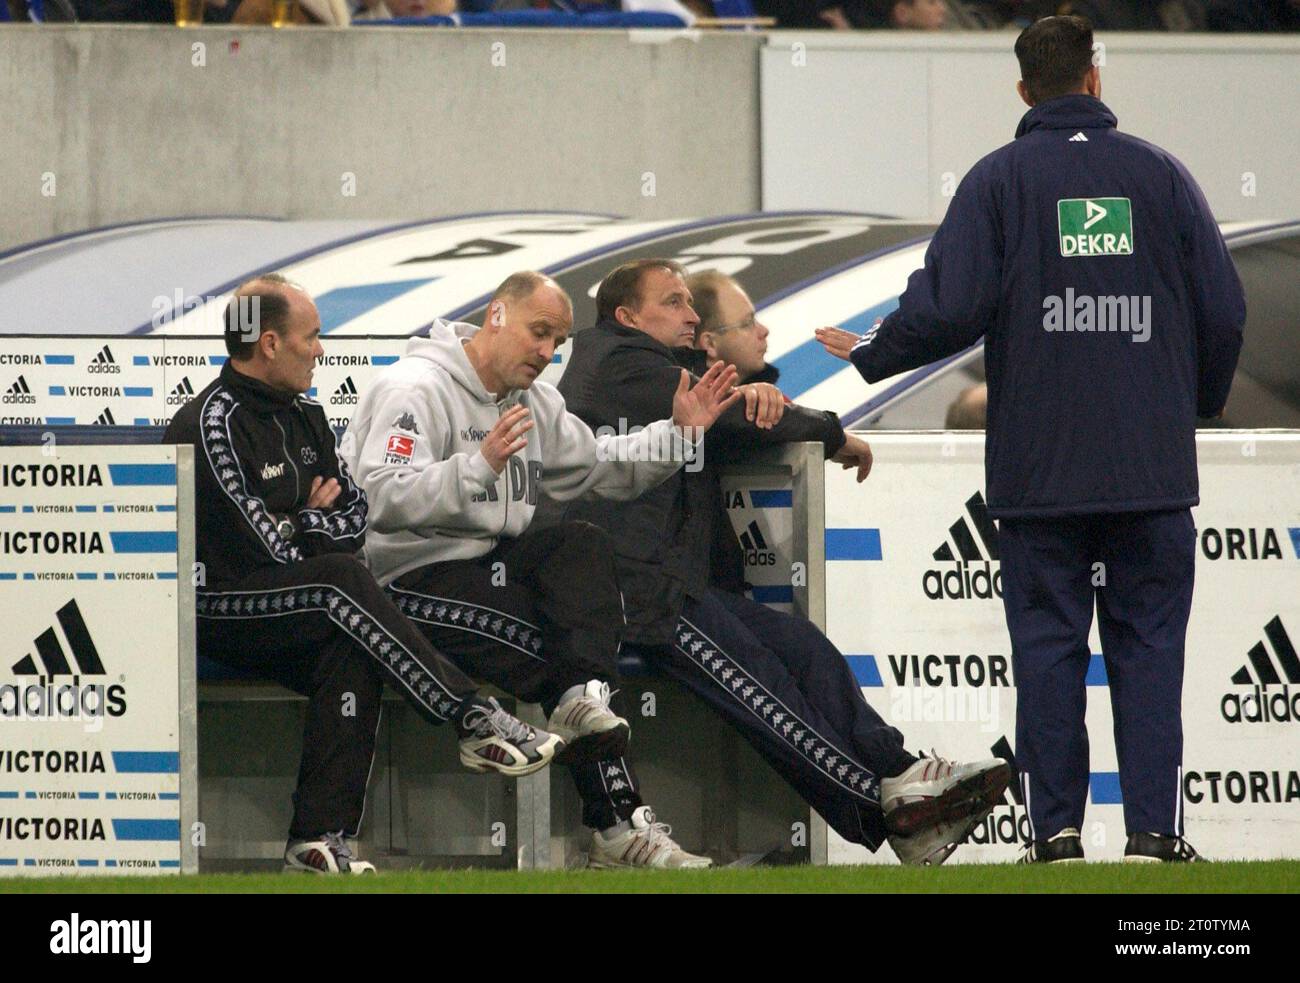 Gelsenkirchen Deutschland, 21.2.2004 Fußball: Bundesligasaison 2003/04, Schalke 04 (S04, blau) gegen Werder Bremen (WBR, grün) 0:0 – Thomas Schaaf (WBR, 2. V. l.) beschwert sich Stockfoto